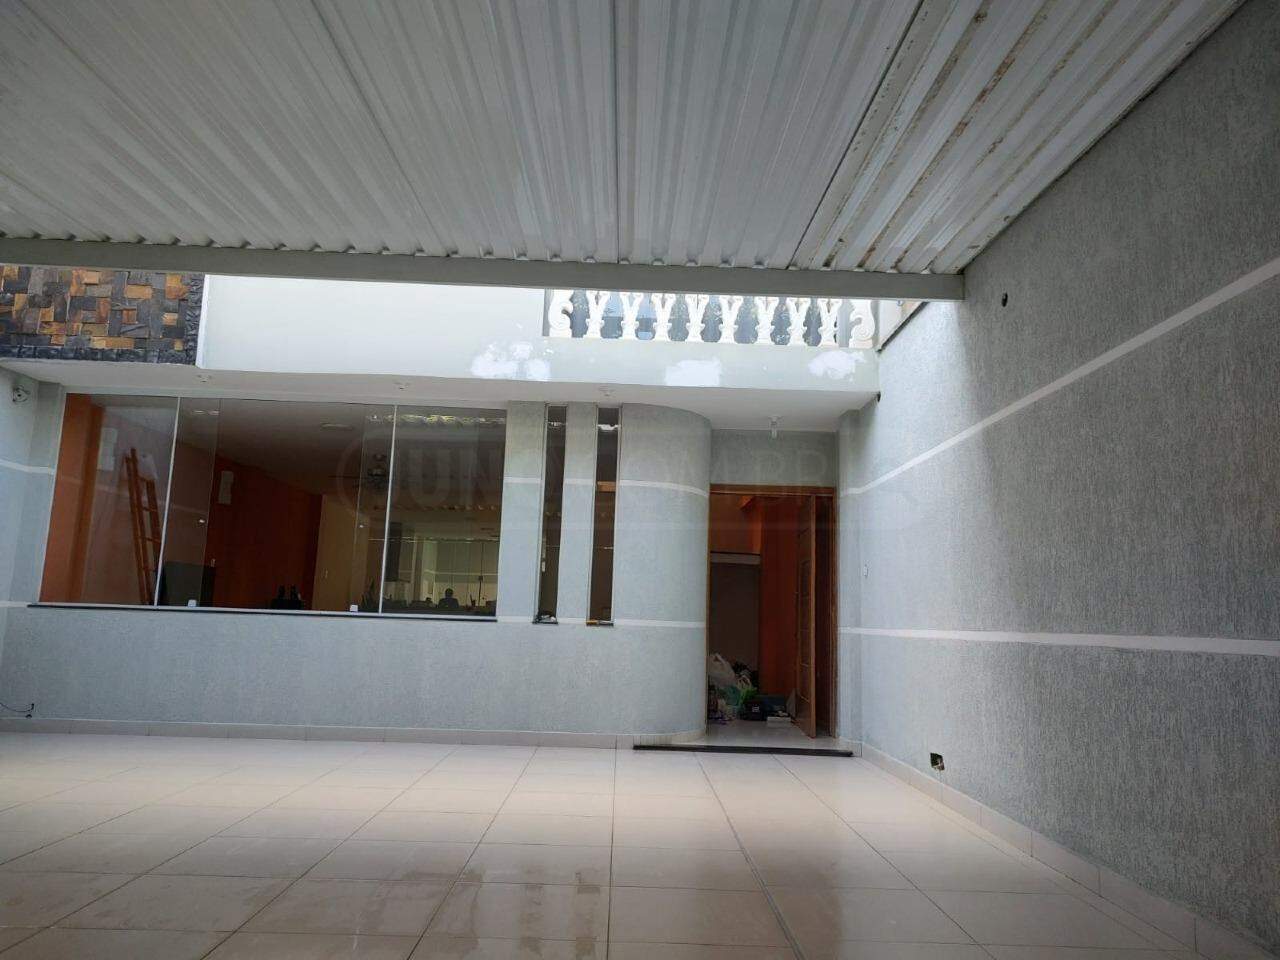 Casa à venda, 4 quartos, sendo 2 suítes, 4 vagas, no bairro Residencial Bertolucci em Piracicaba - SP